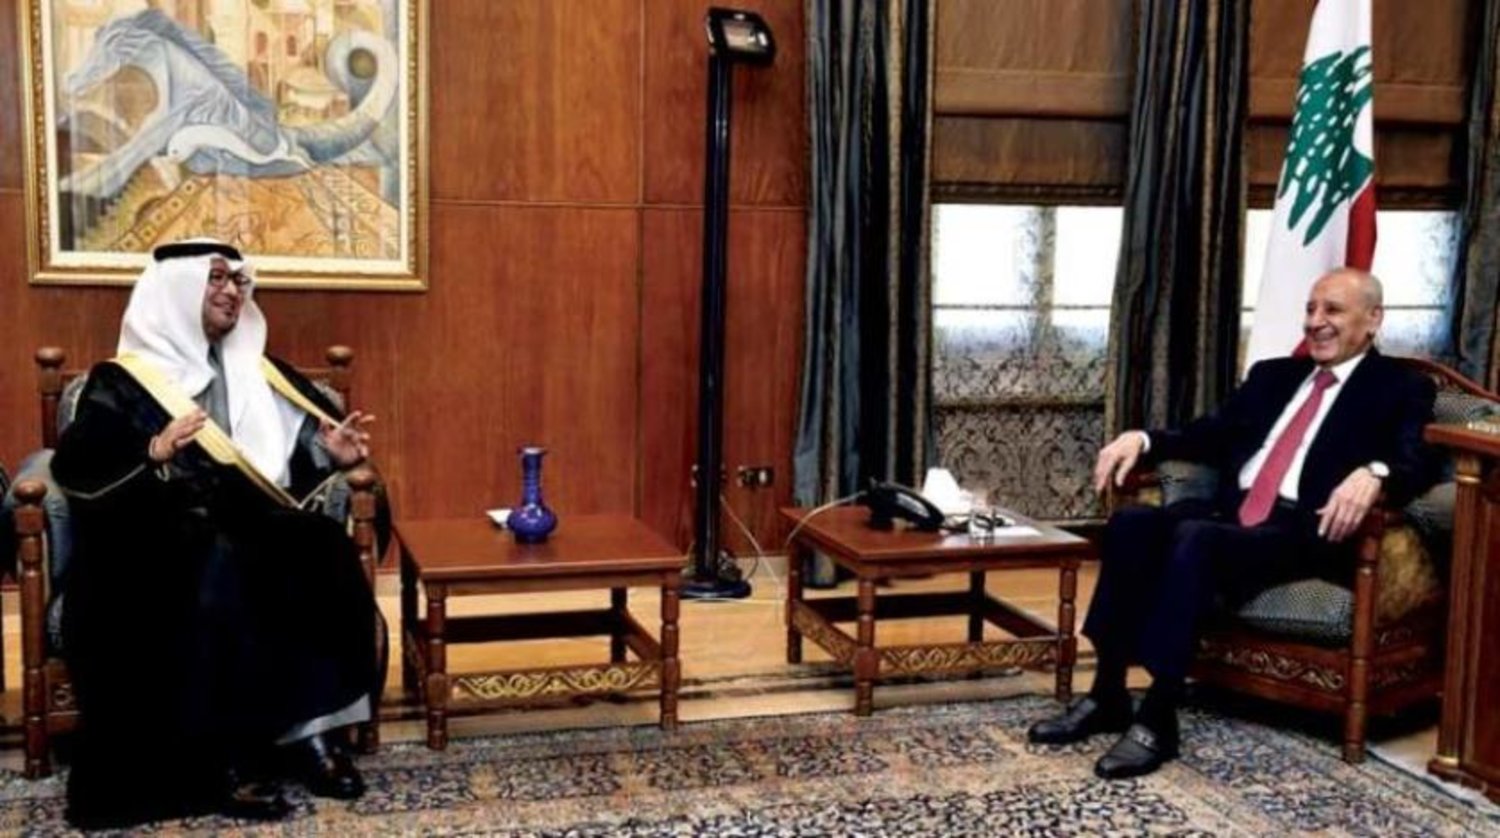 Lübnan Temsilciler Meclisi Başkanı Berri, Suudi Arabistan’ın Beyrut Büyükelçisi Buhari ile bir araya geldi. (Temsilciler Meclisi)

